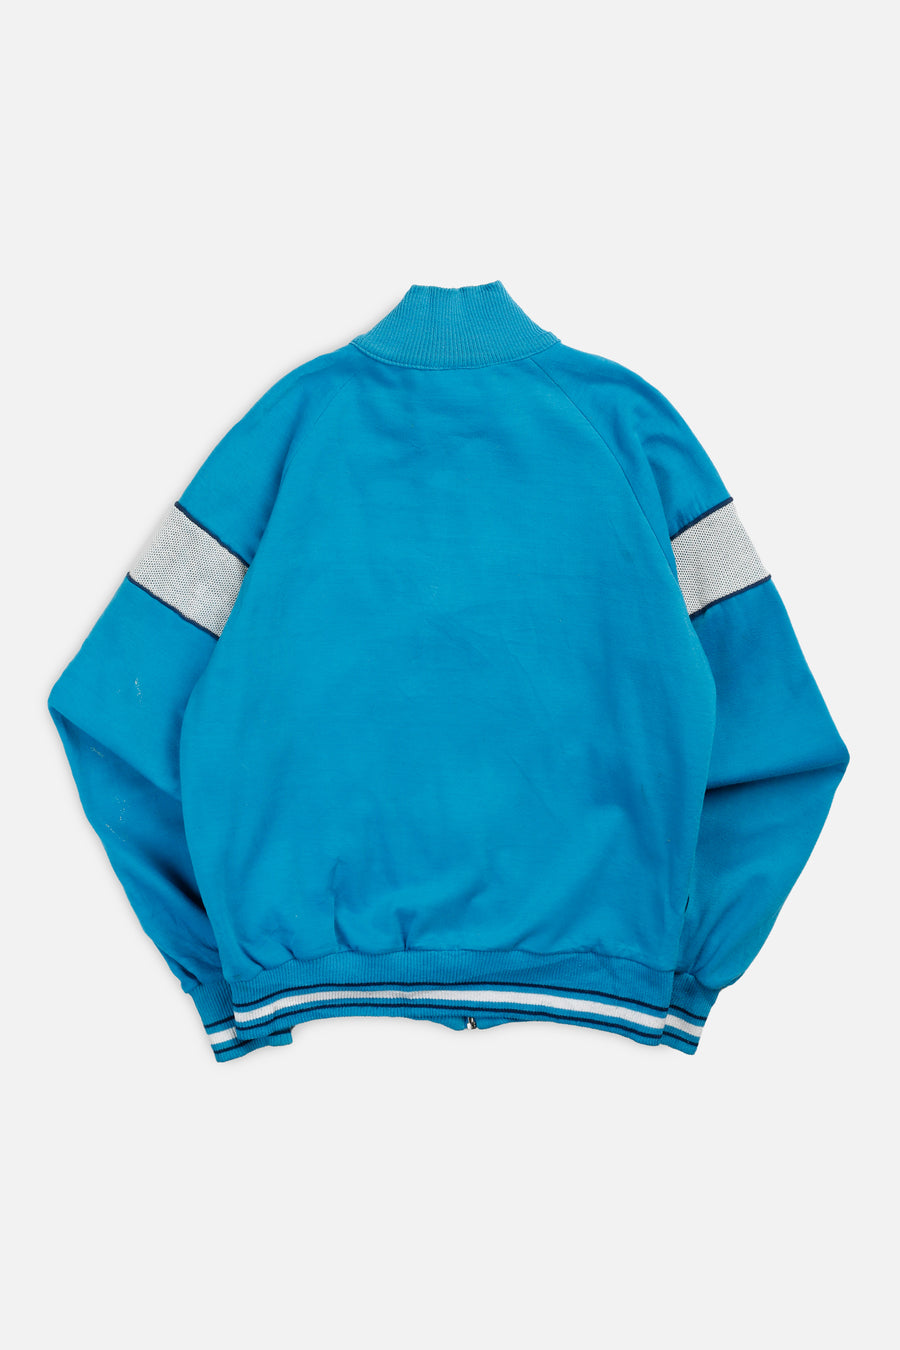 Vintage Nike Zip Sweatshirt - M